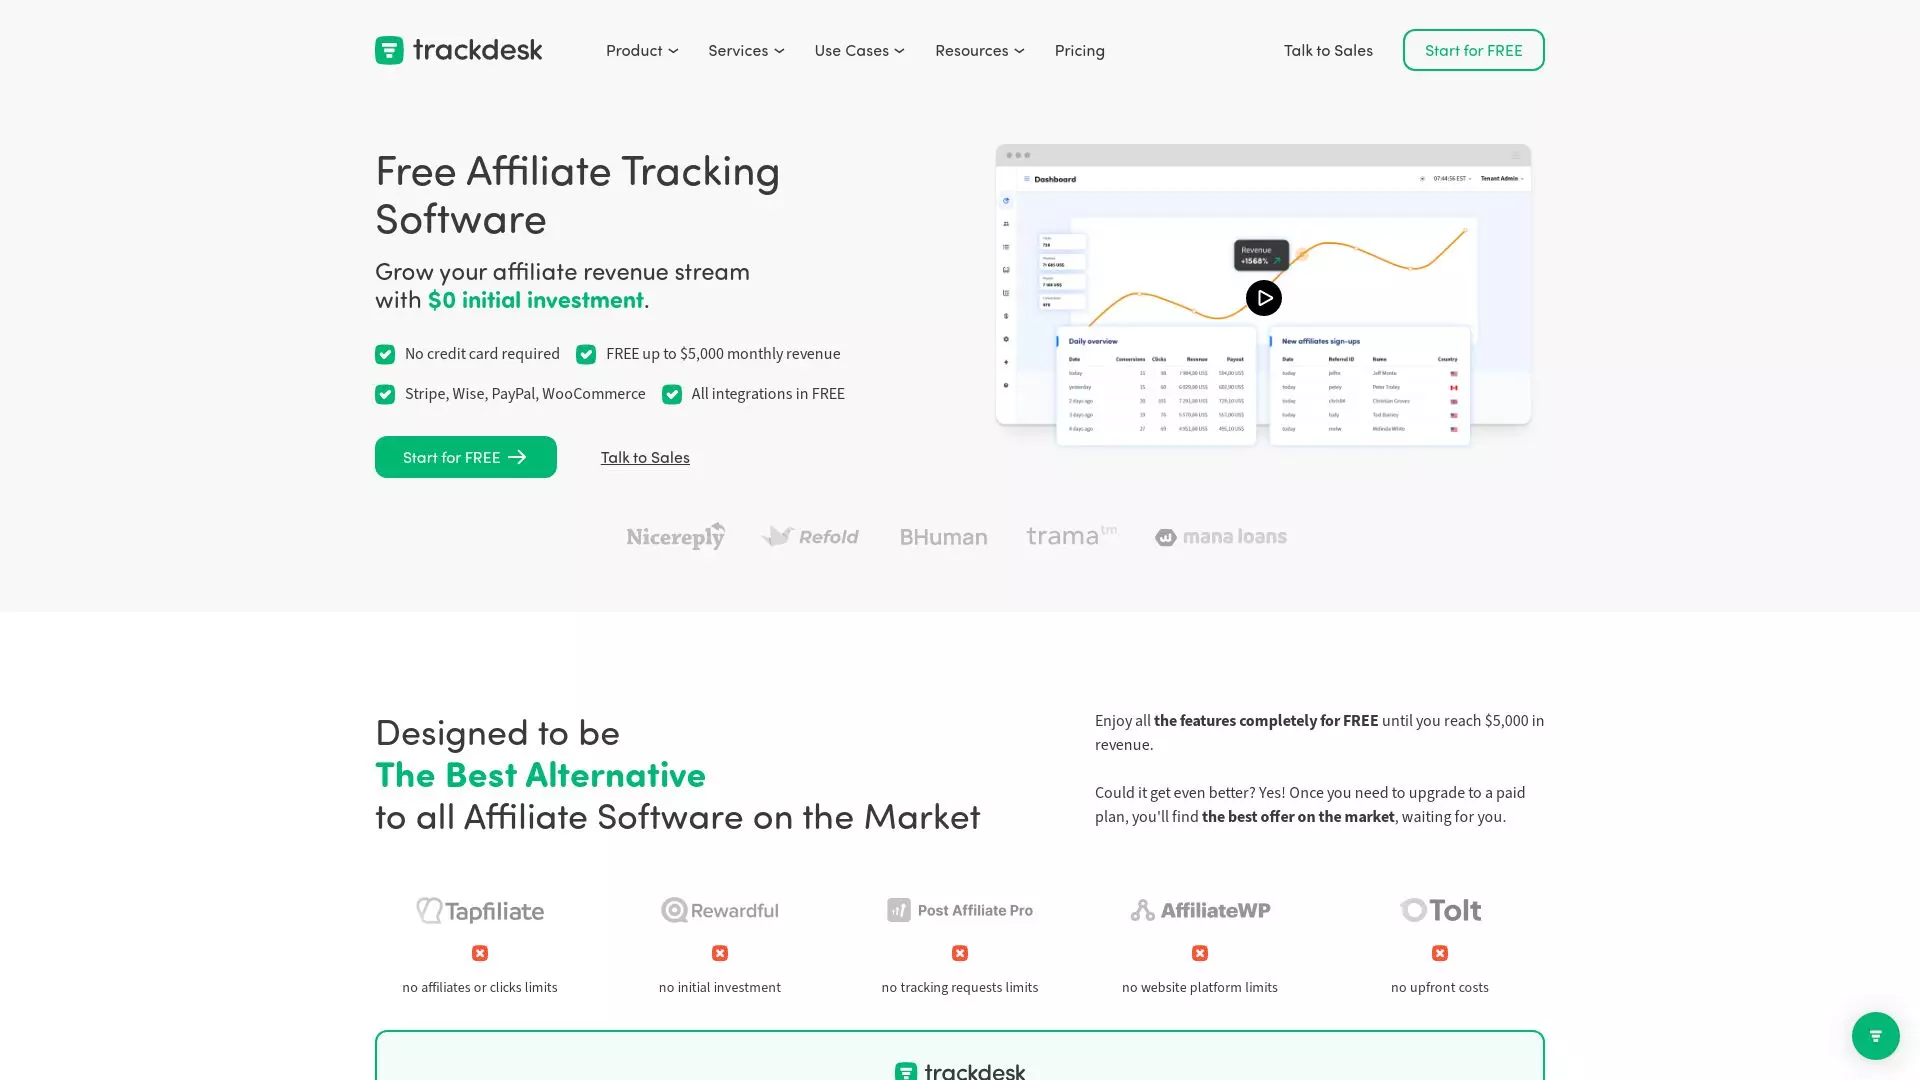 Trackdesk